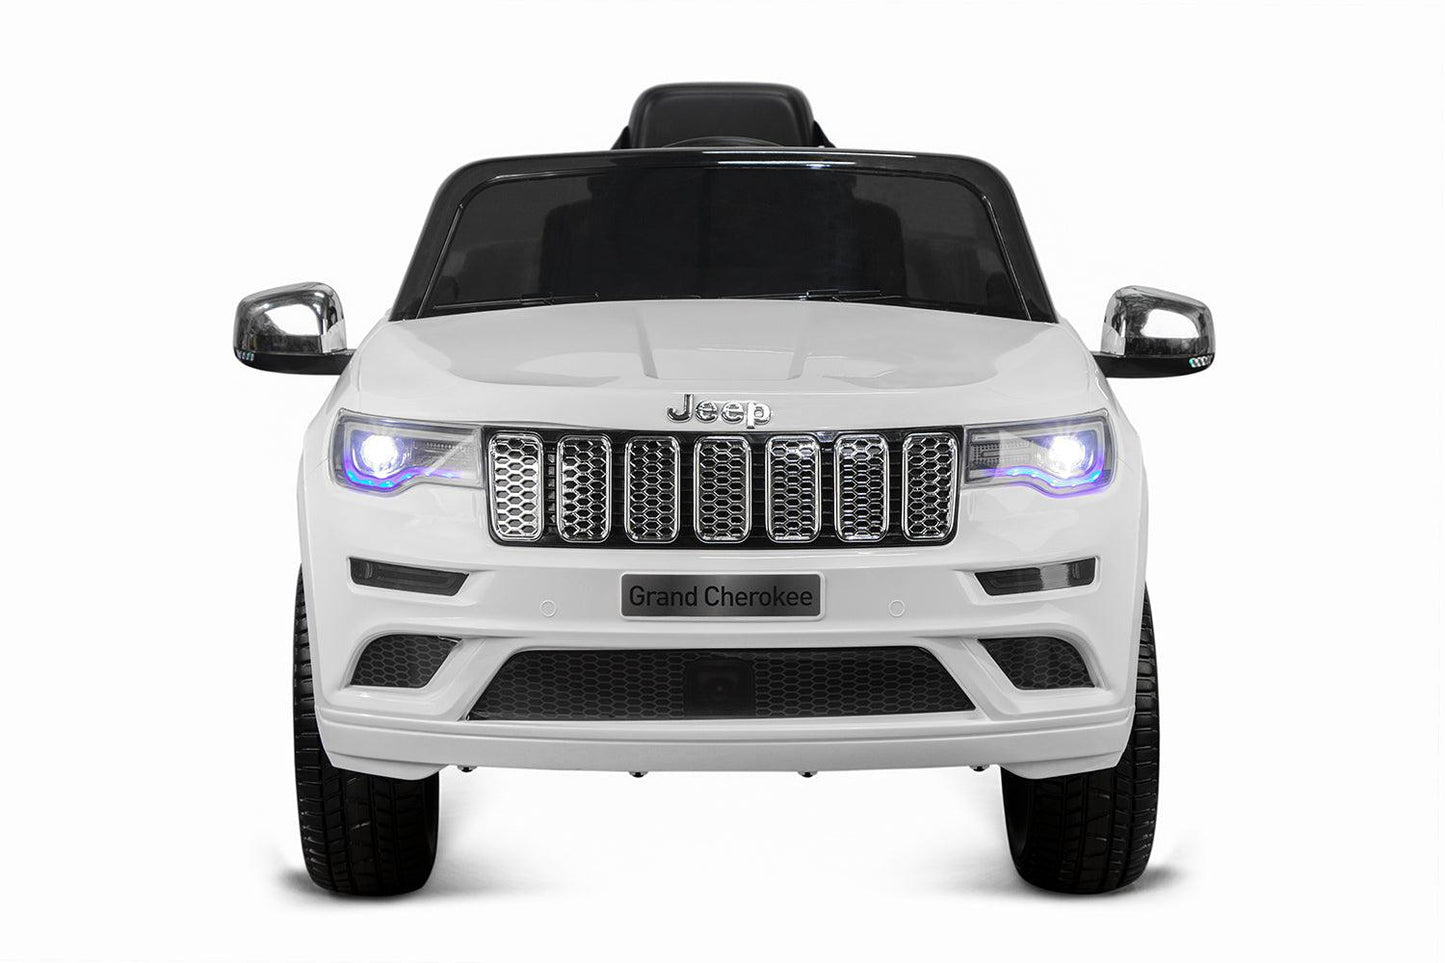 Lizenz Kinder Elektro Auto Jeep Grand Cherokee: Ein kleines Abenteuer für junge Entdecker! - kidsdrive.net - Rideonkidcar - Elektroauto für Kinder - Geschenkidee - Kinderfahrzeug